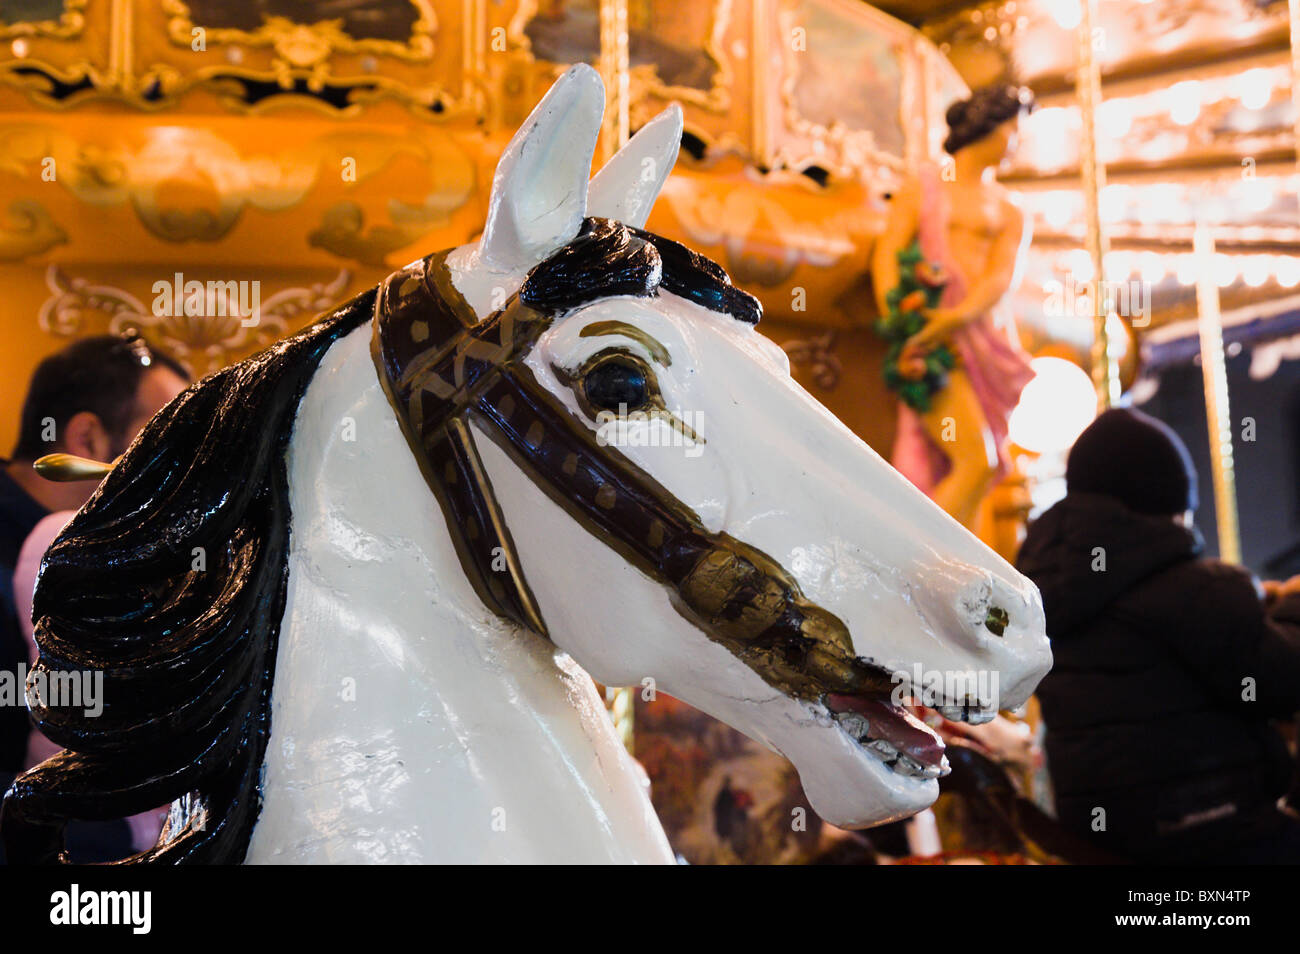 Roma, foto nocturna cerca de antiguos merry go round cabeza de caballo en la Piazza Navona mercado de Navidad. Foto de stock